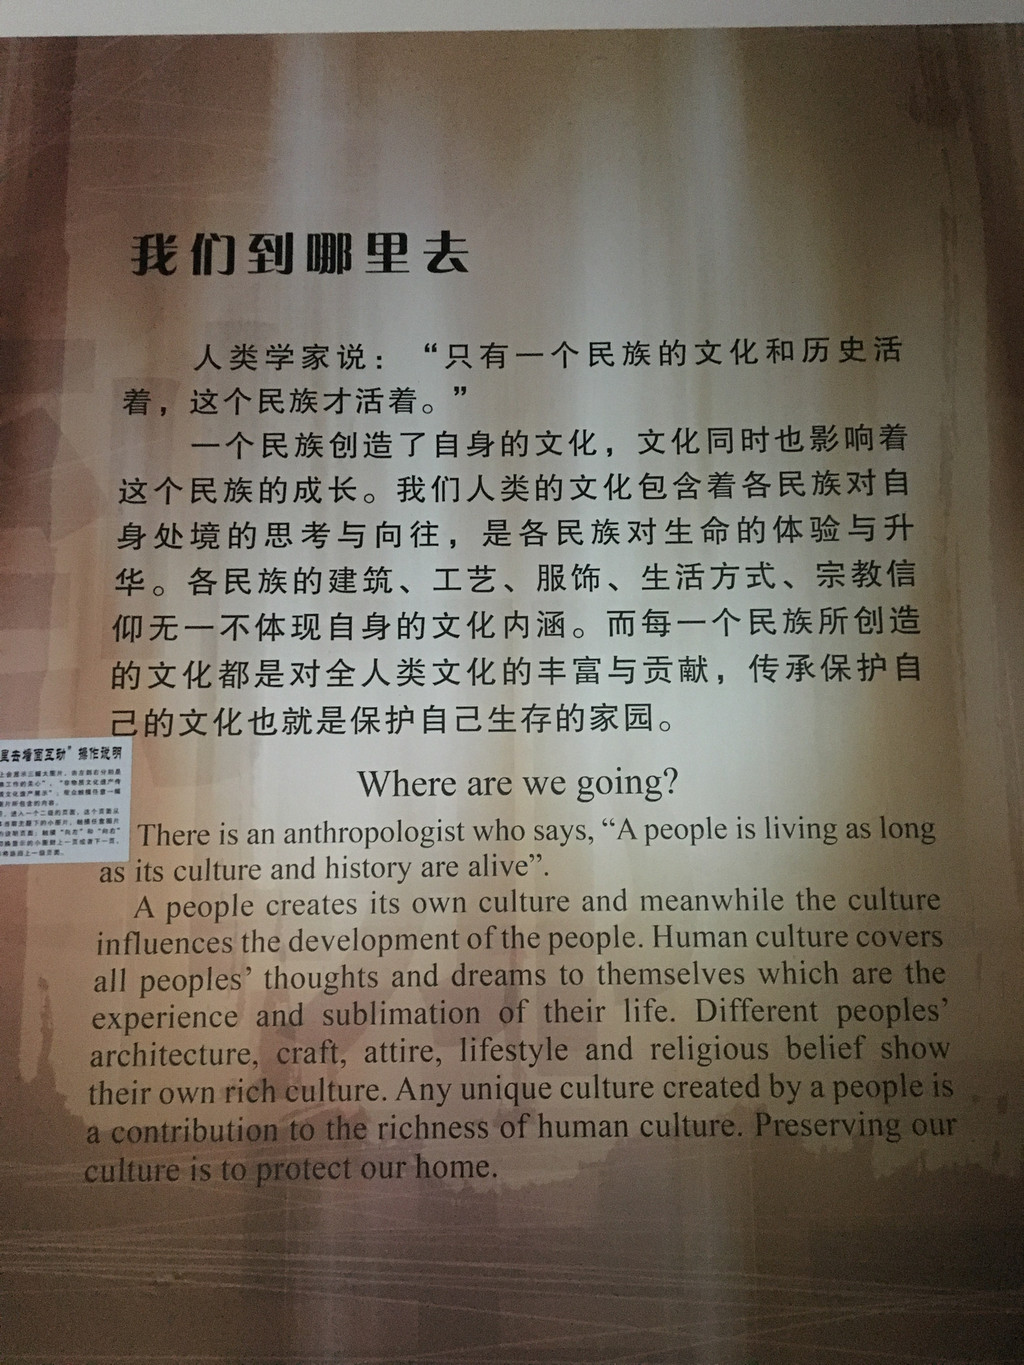 贵州省民族博物馆-观后感 -只有民族的,才是最好的,珍惜吧